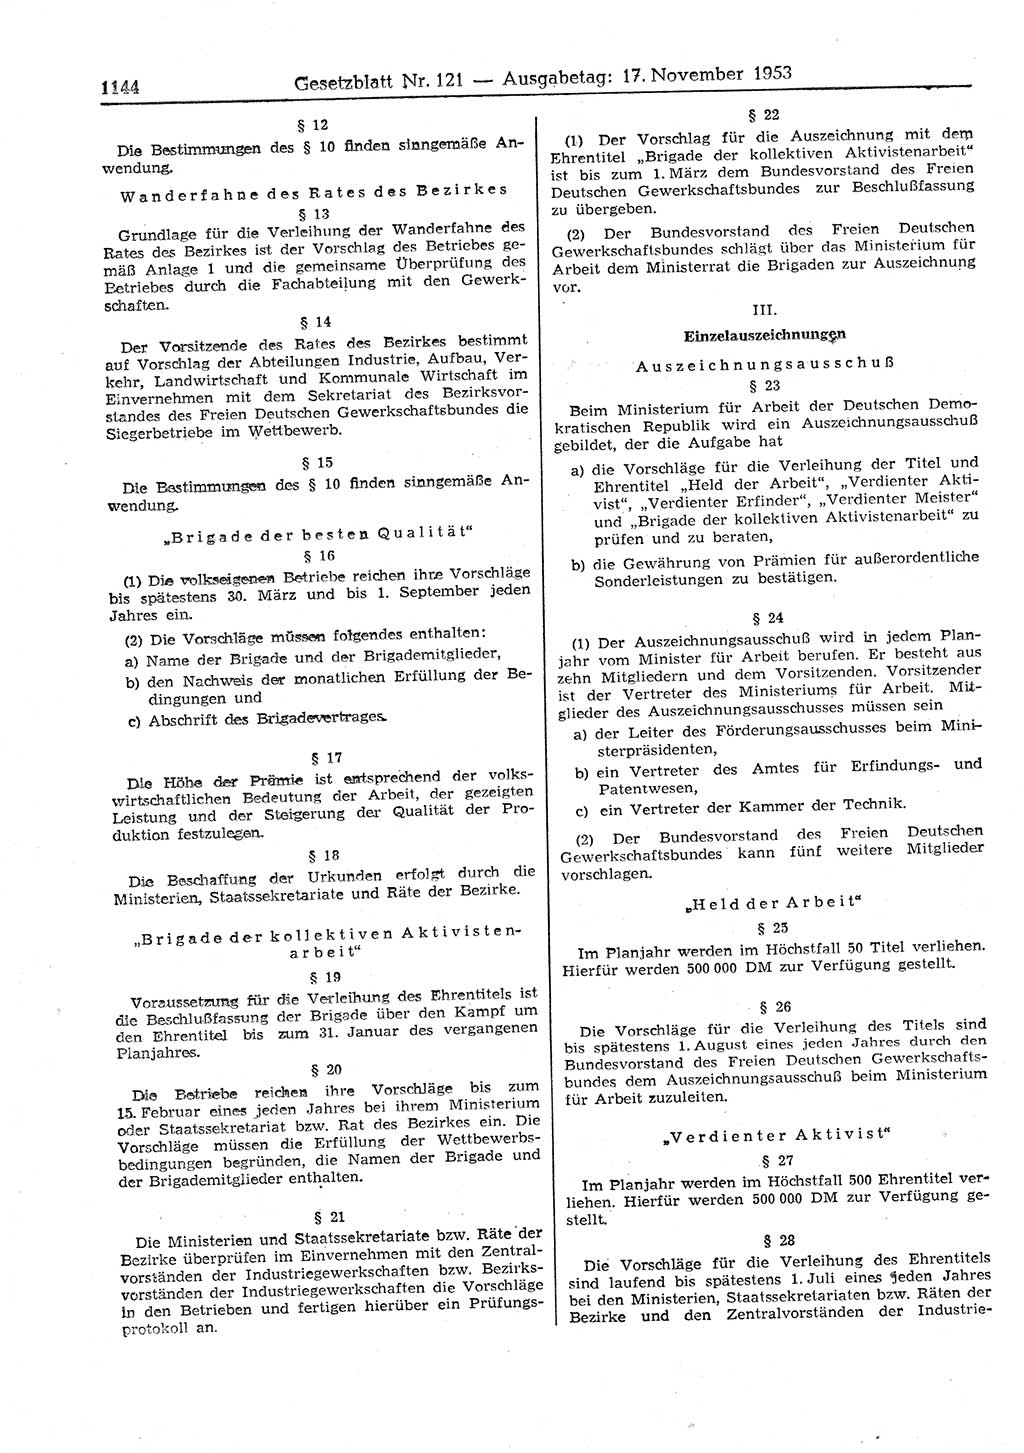 Gesetzblatt (GBl.) der Deutschen Demokratischen Republik (DDR) 1953, Seite 1144 (GBl. DDR 1953, S. 1144)